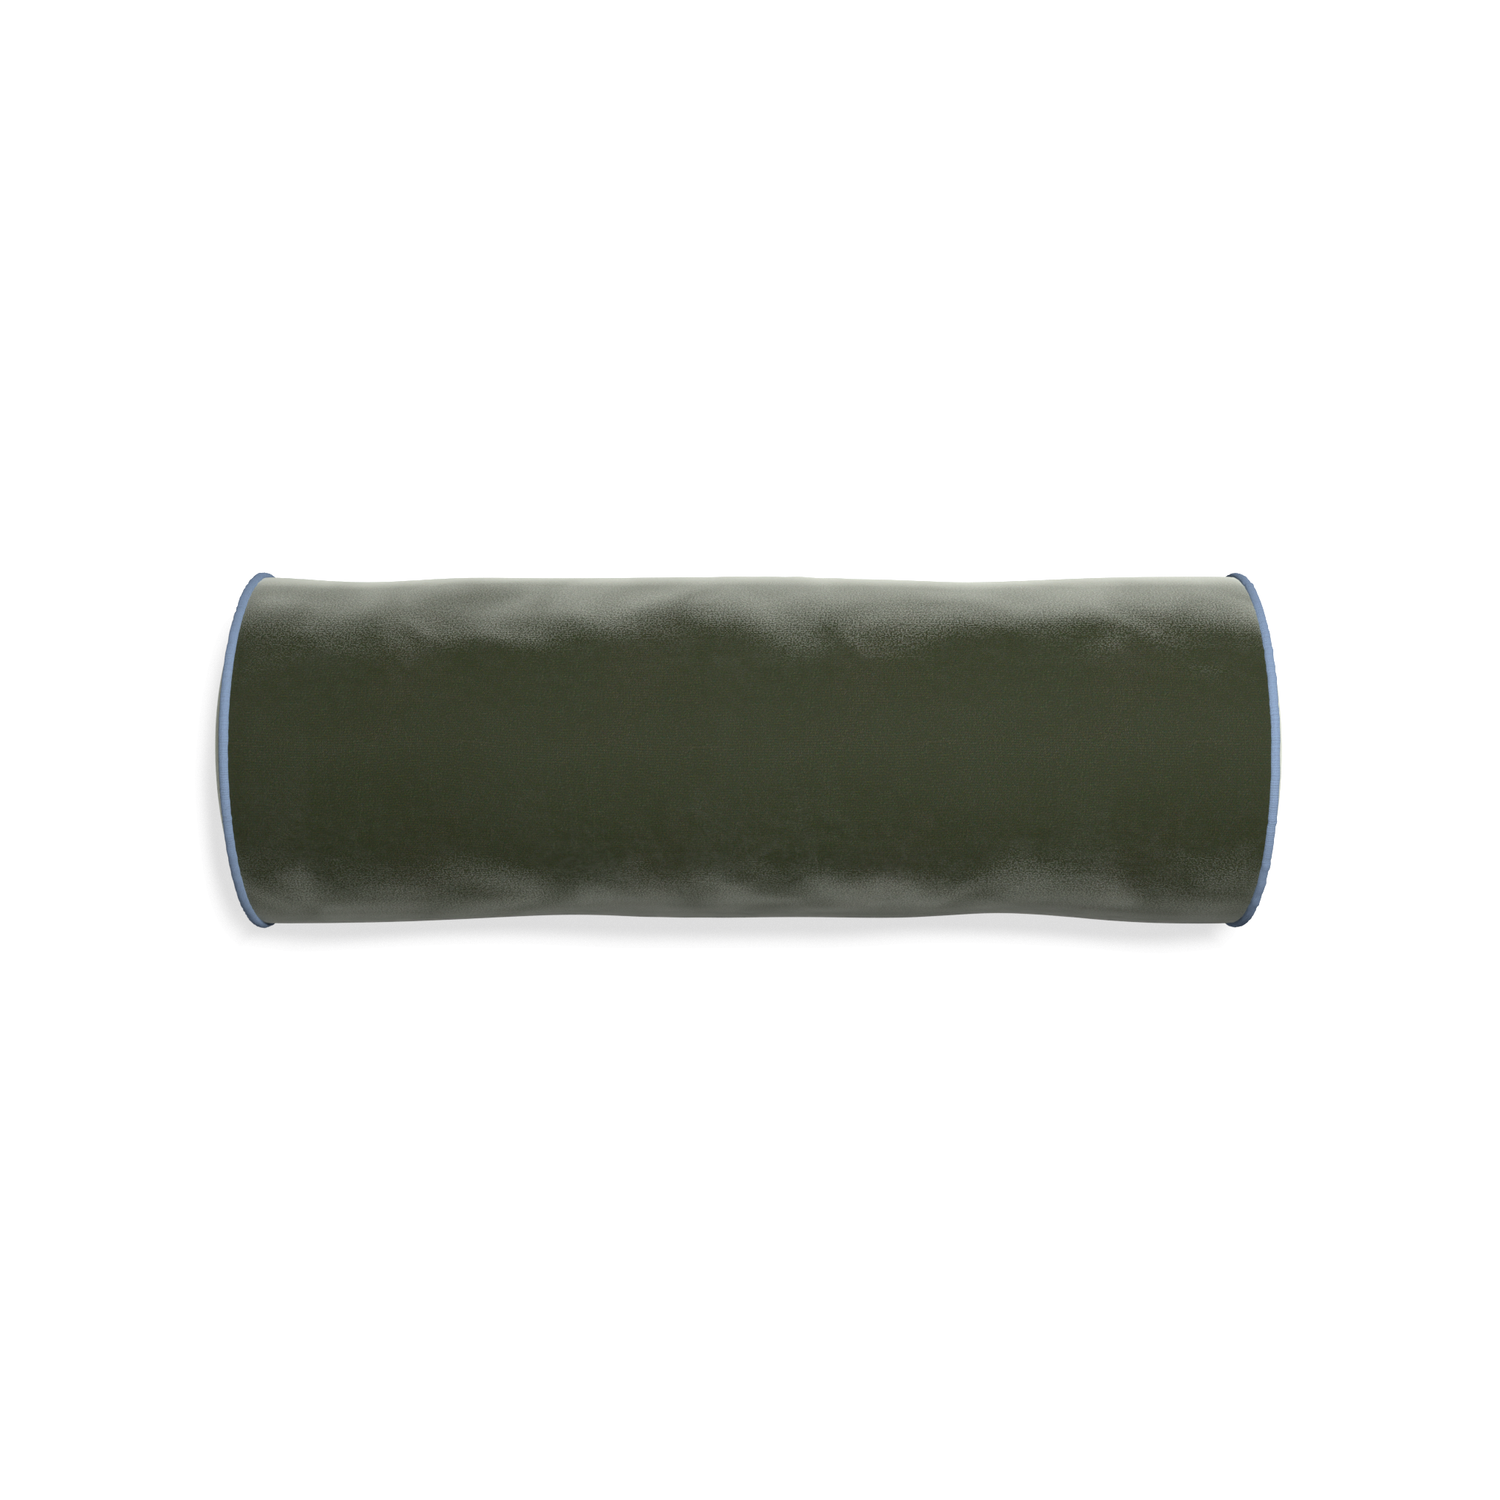 bolster fern green velvet pillow with sky blue piping